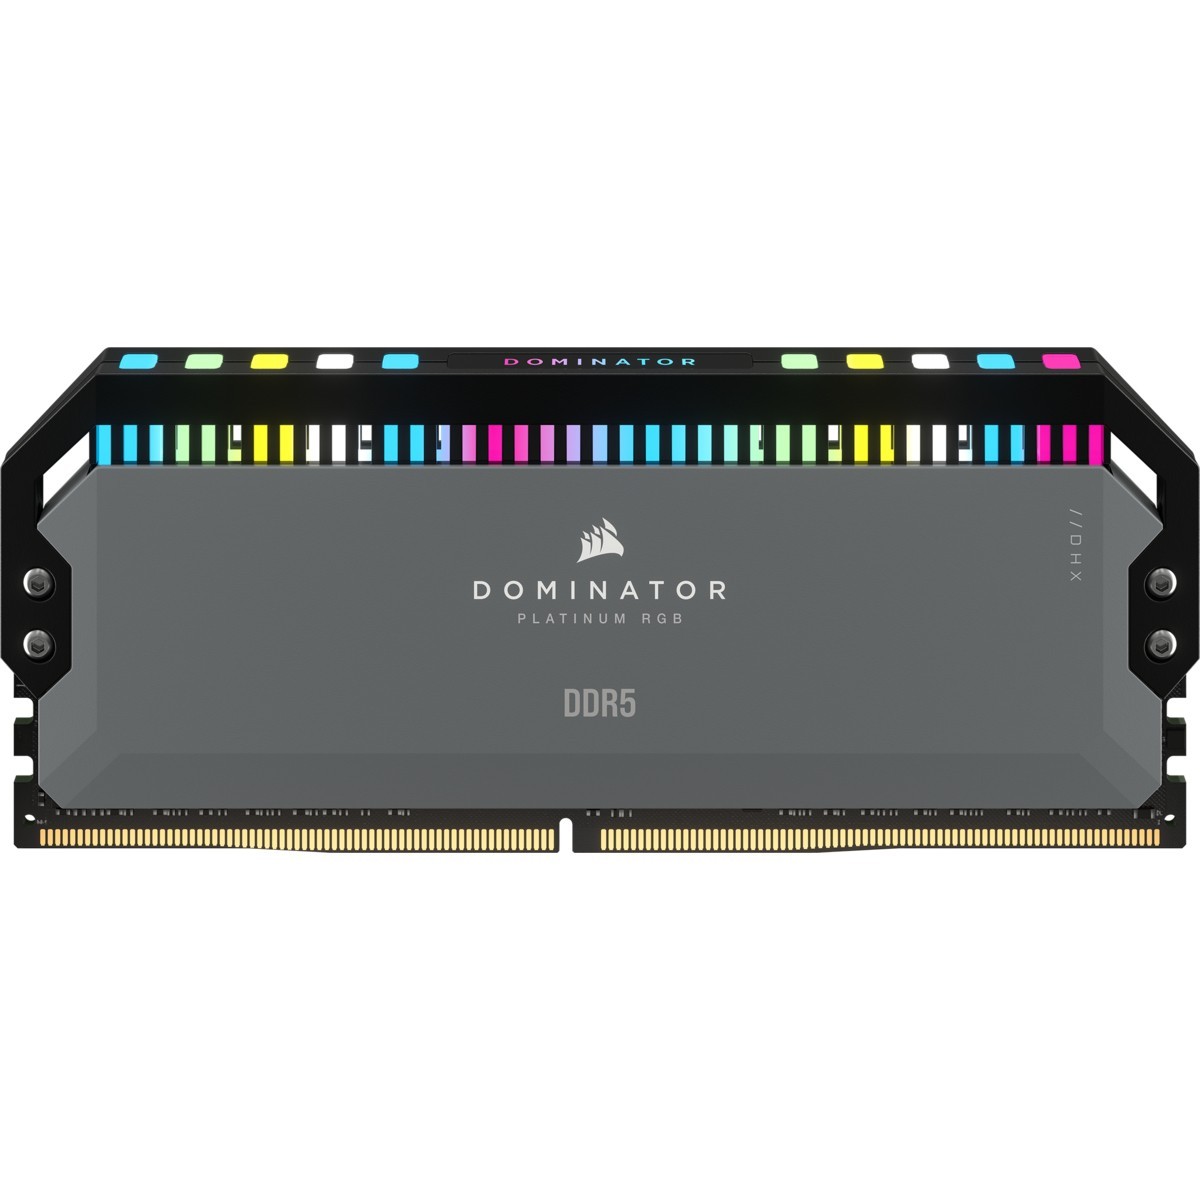 Corsair DDR5 64GB PC 5200 CL40 Kit 2x32GB Dominator Plat. retail - 64 GB